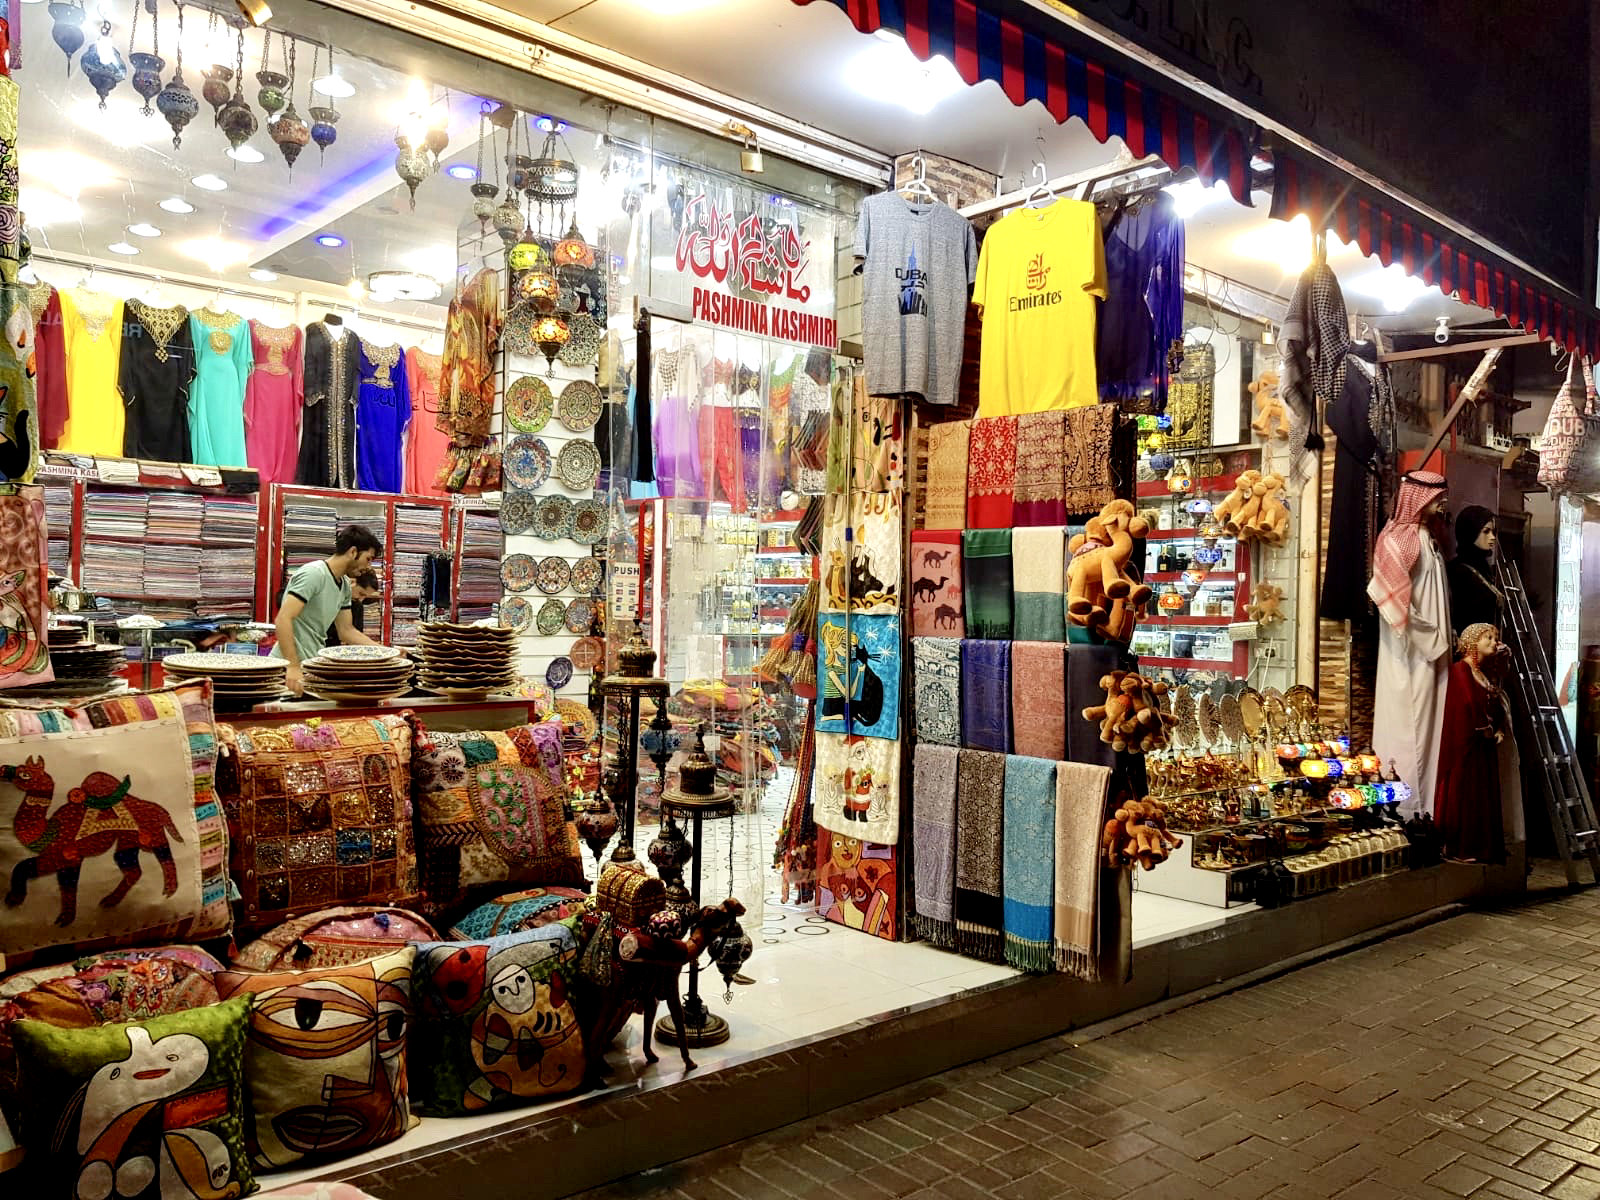 Ткани, игрушки, одежда с национальными принтами популярные сувениры с данного рынка